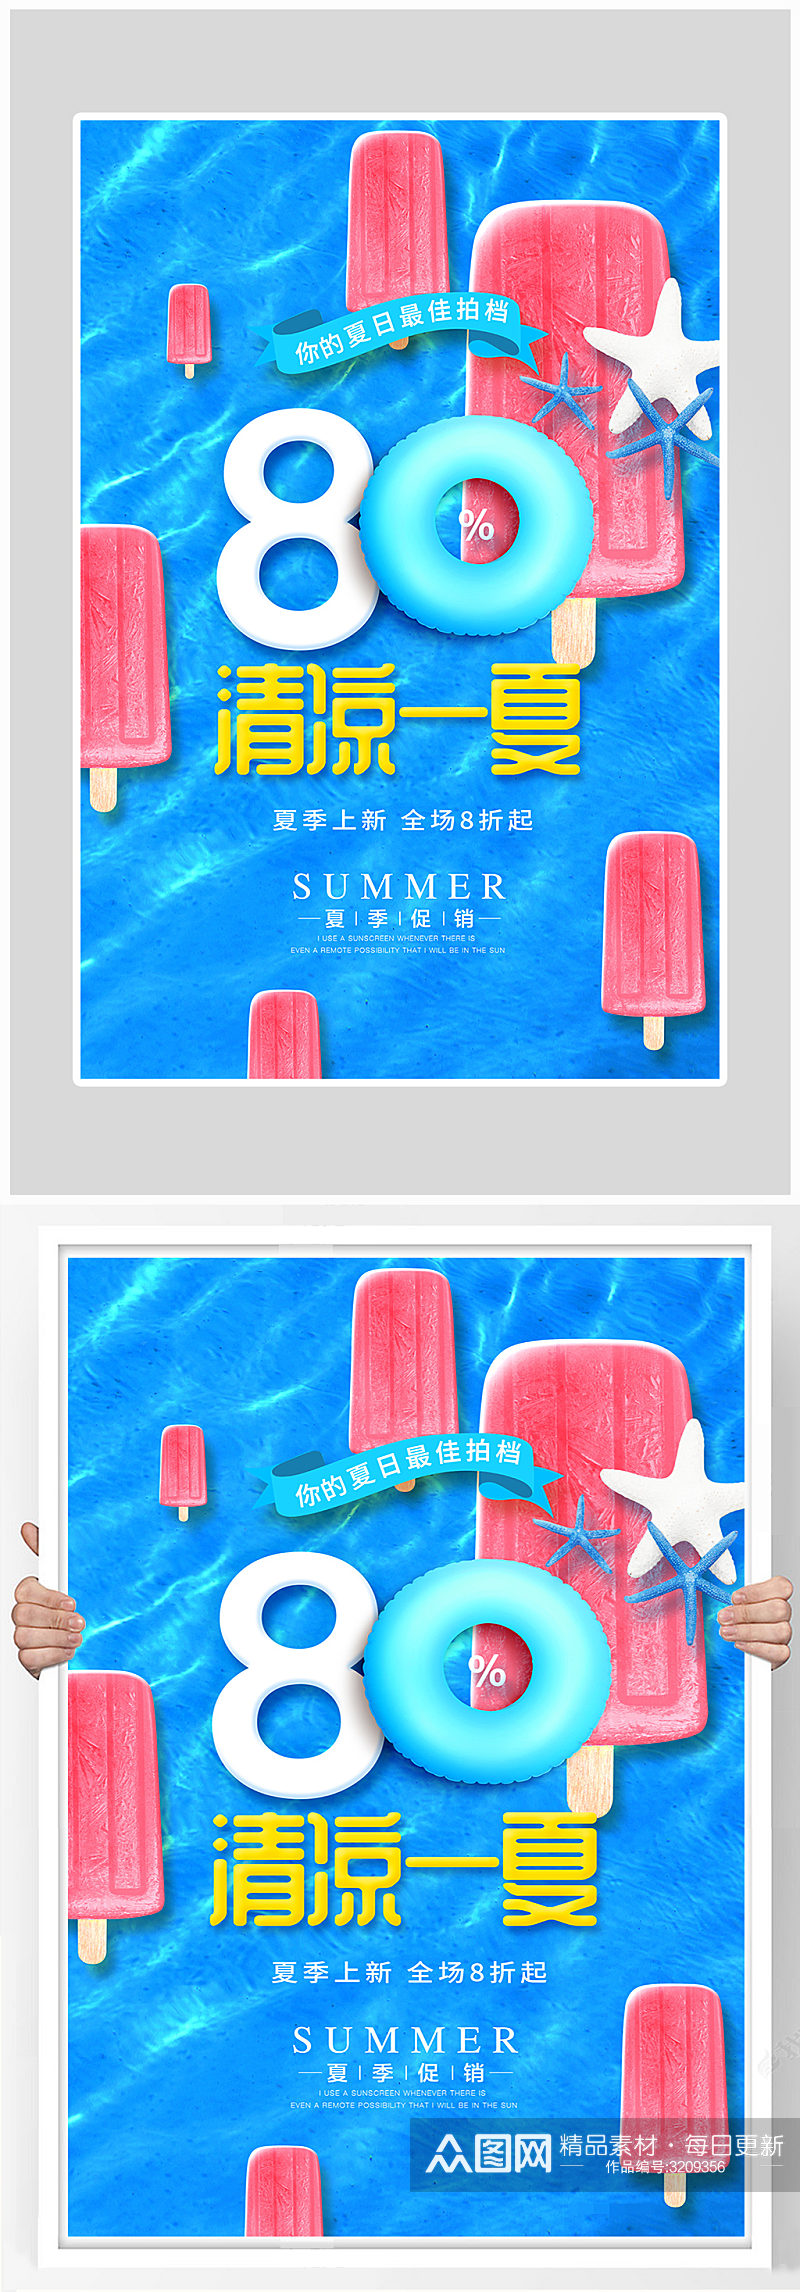 创意清凉一夏冰激凌海报设计素材